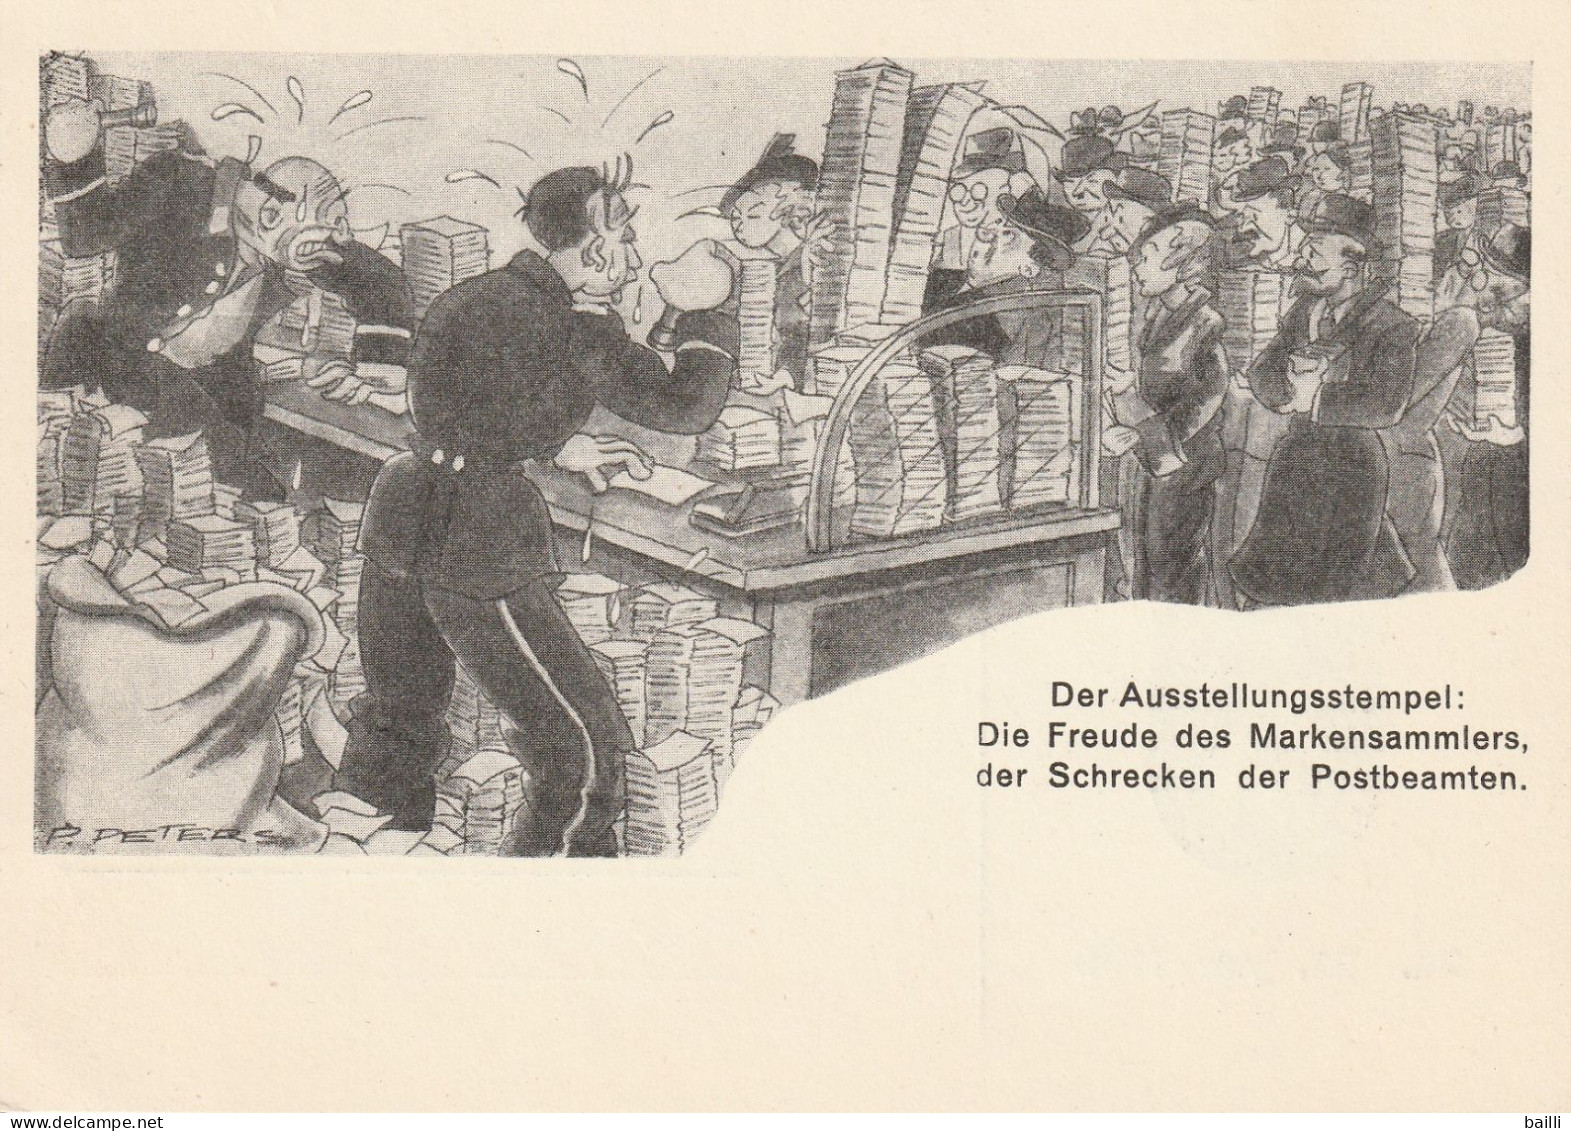 Allemagne Entier Postal Illustré Düsseldorf 1936 - Private Postal Stationery